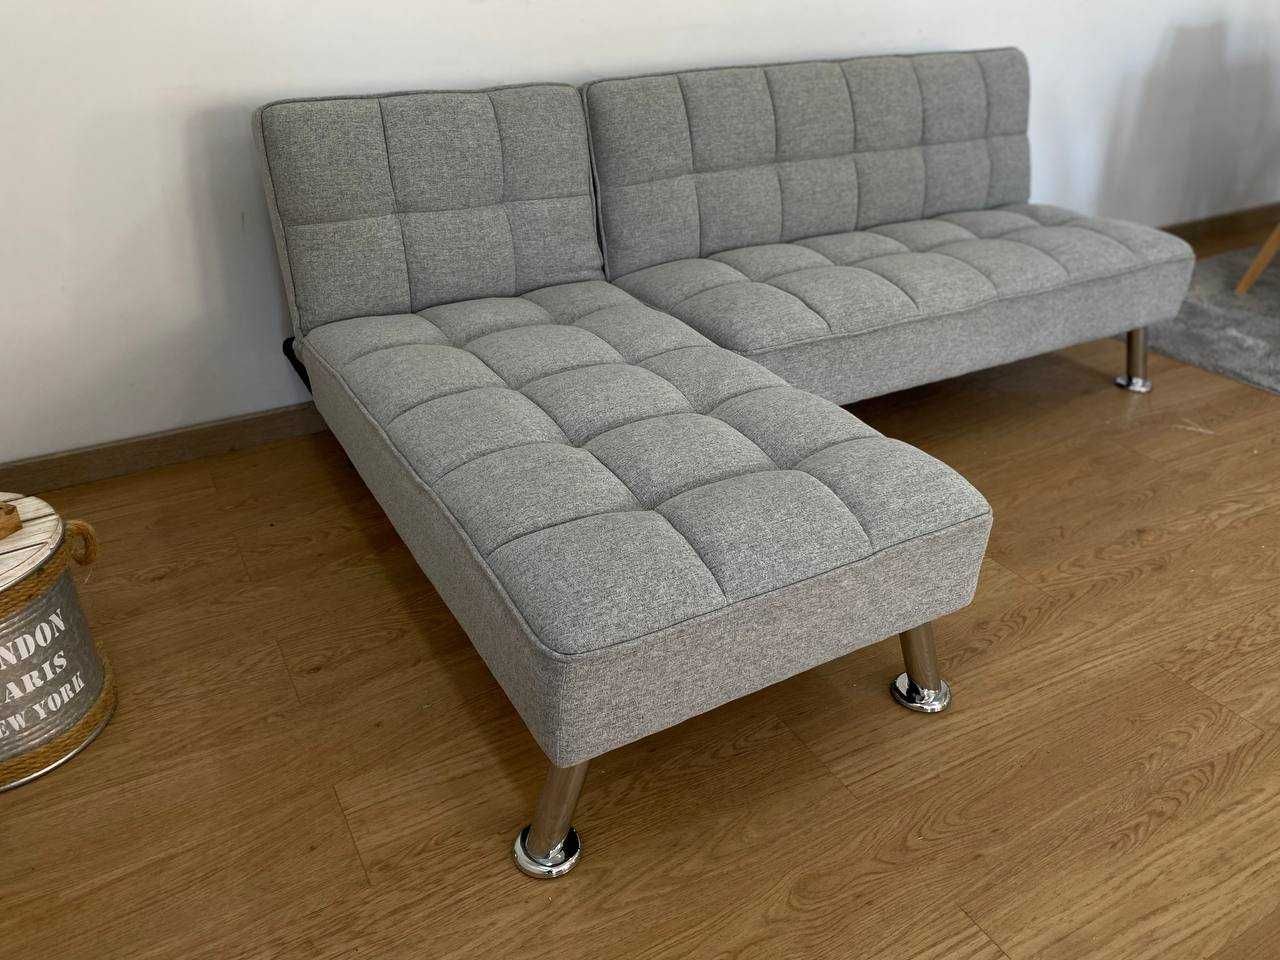 Sofá-cama barato em tecido cinza